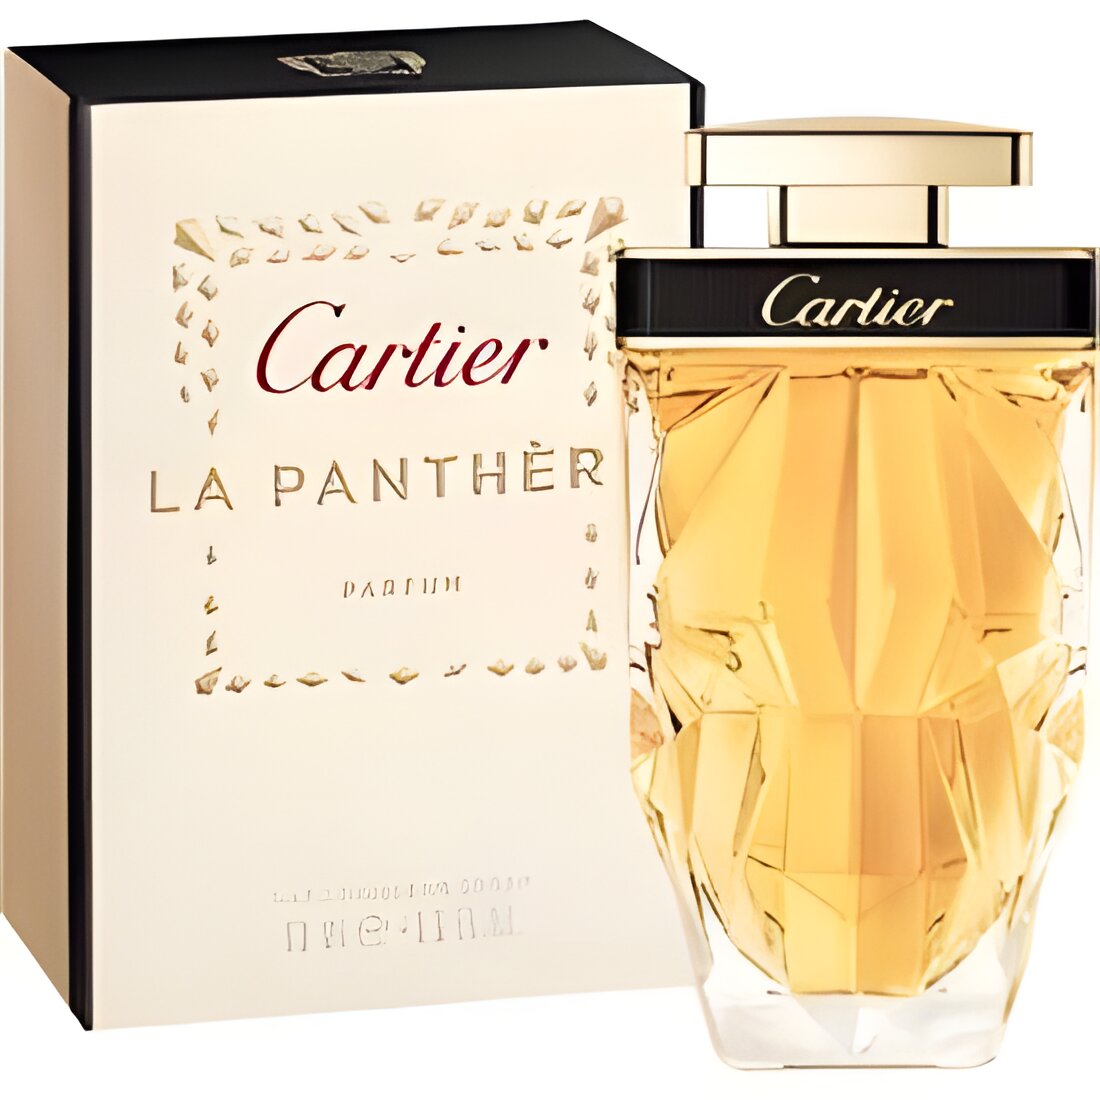 Free Cartier La Panthère Parfum Sample